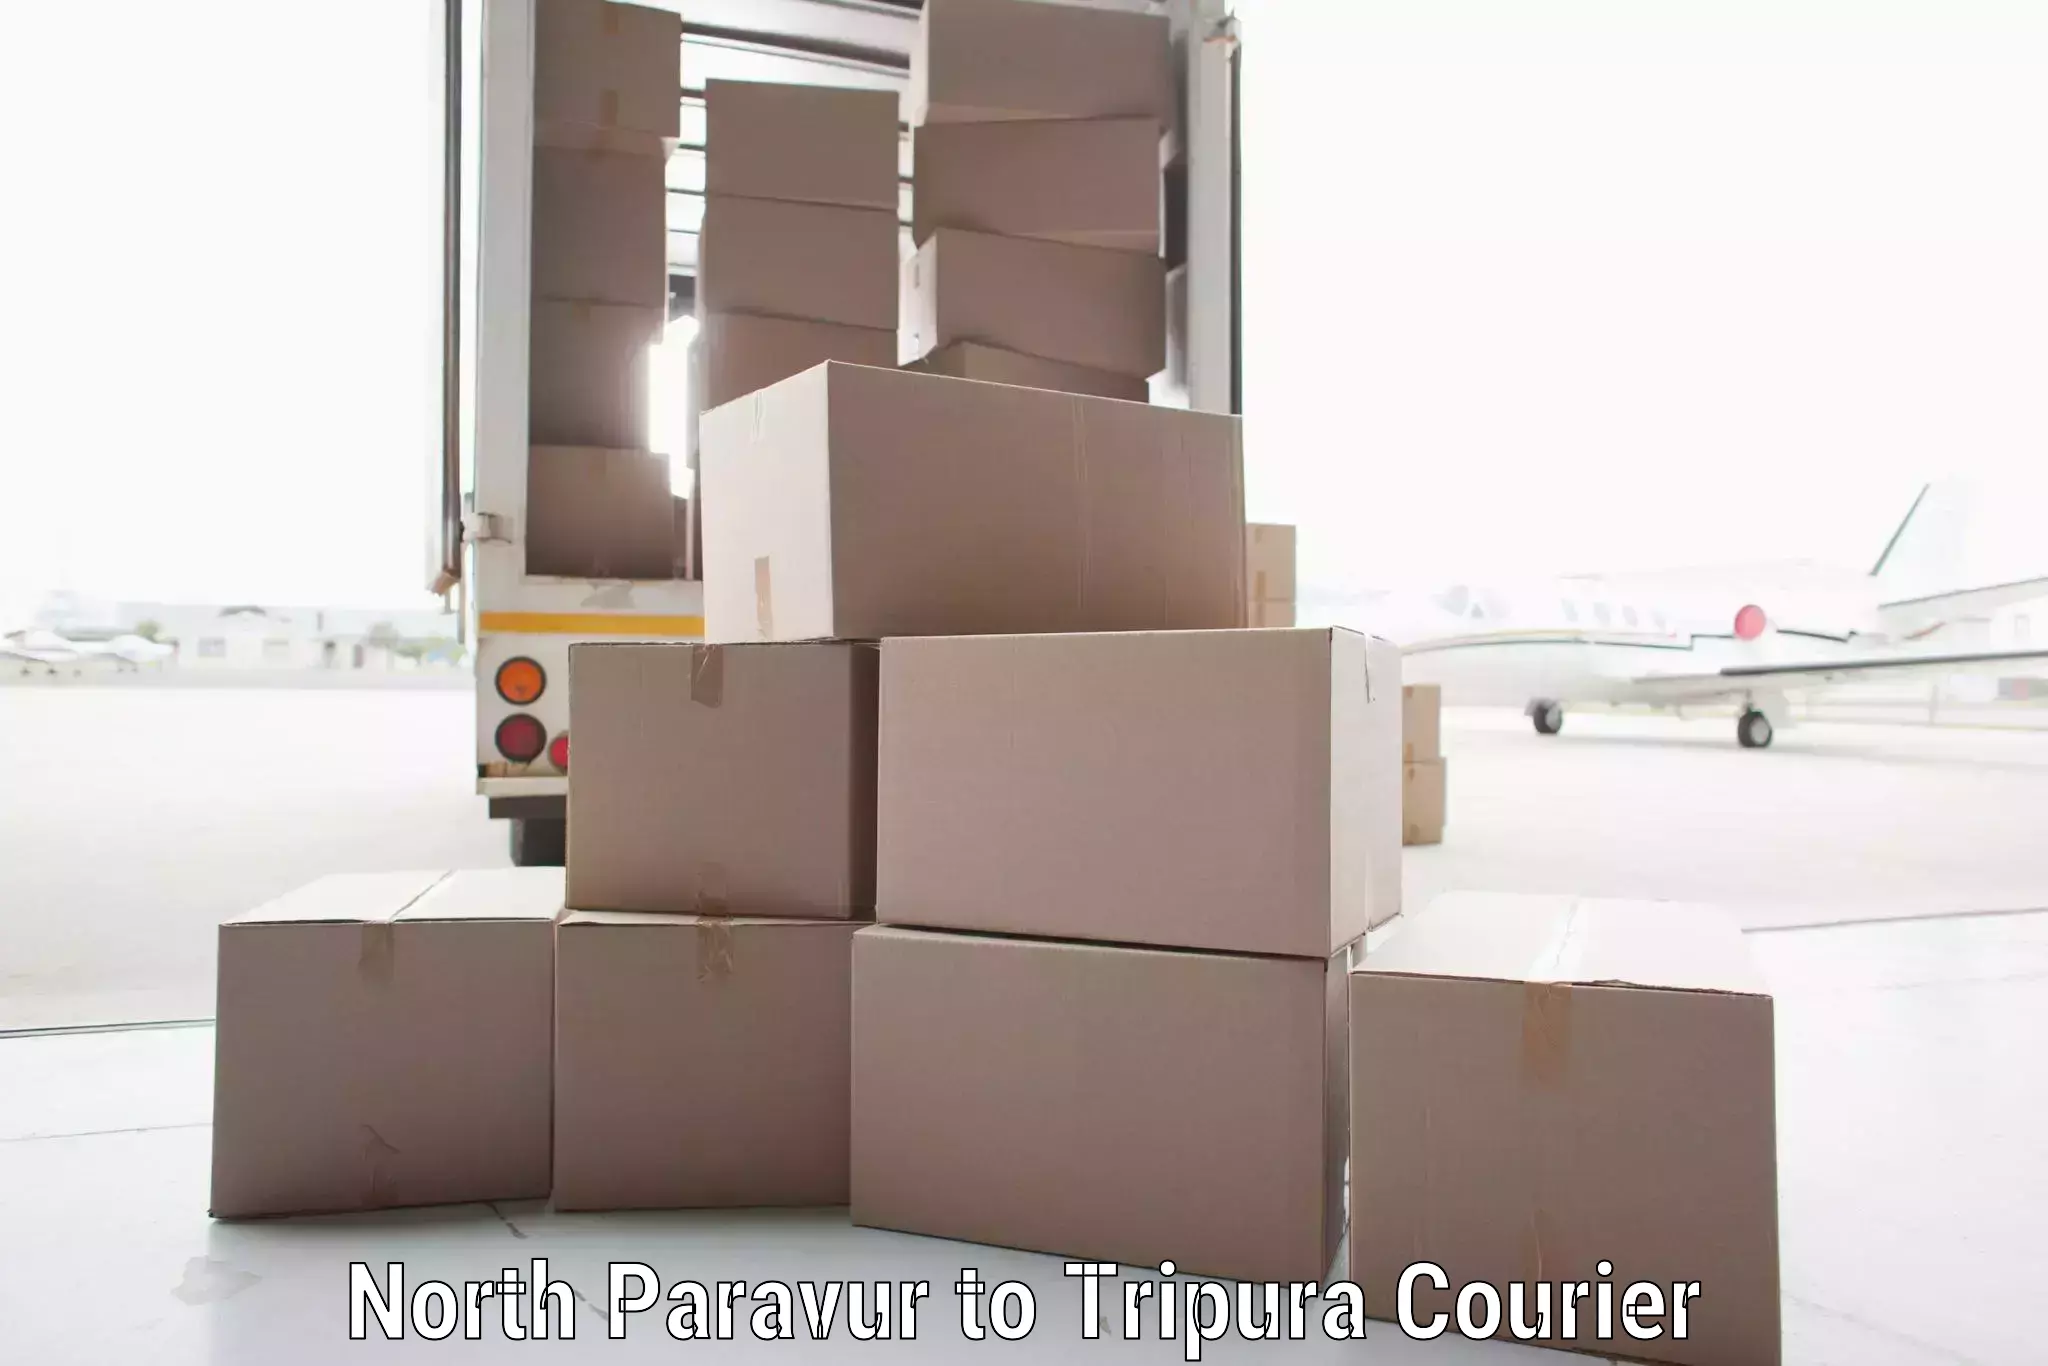 Premium courier solutions North Paravur to Teliamura